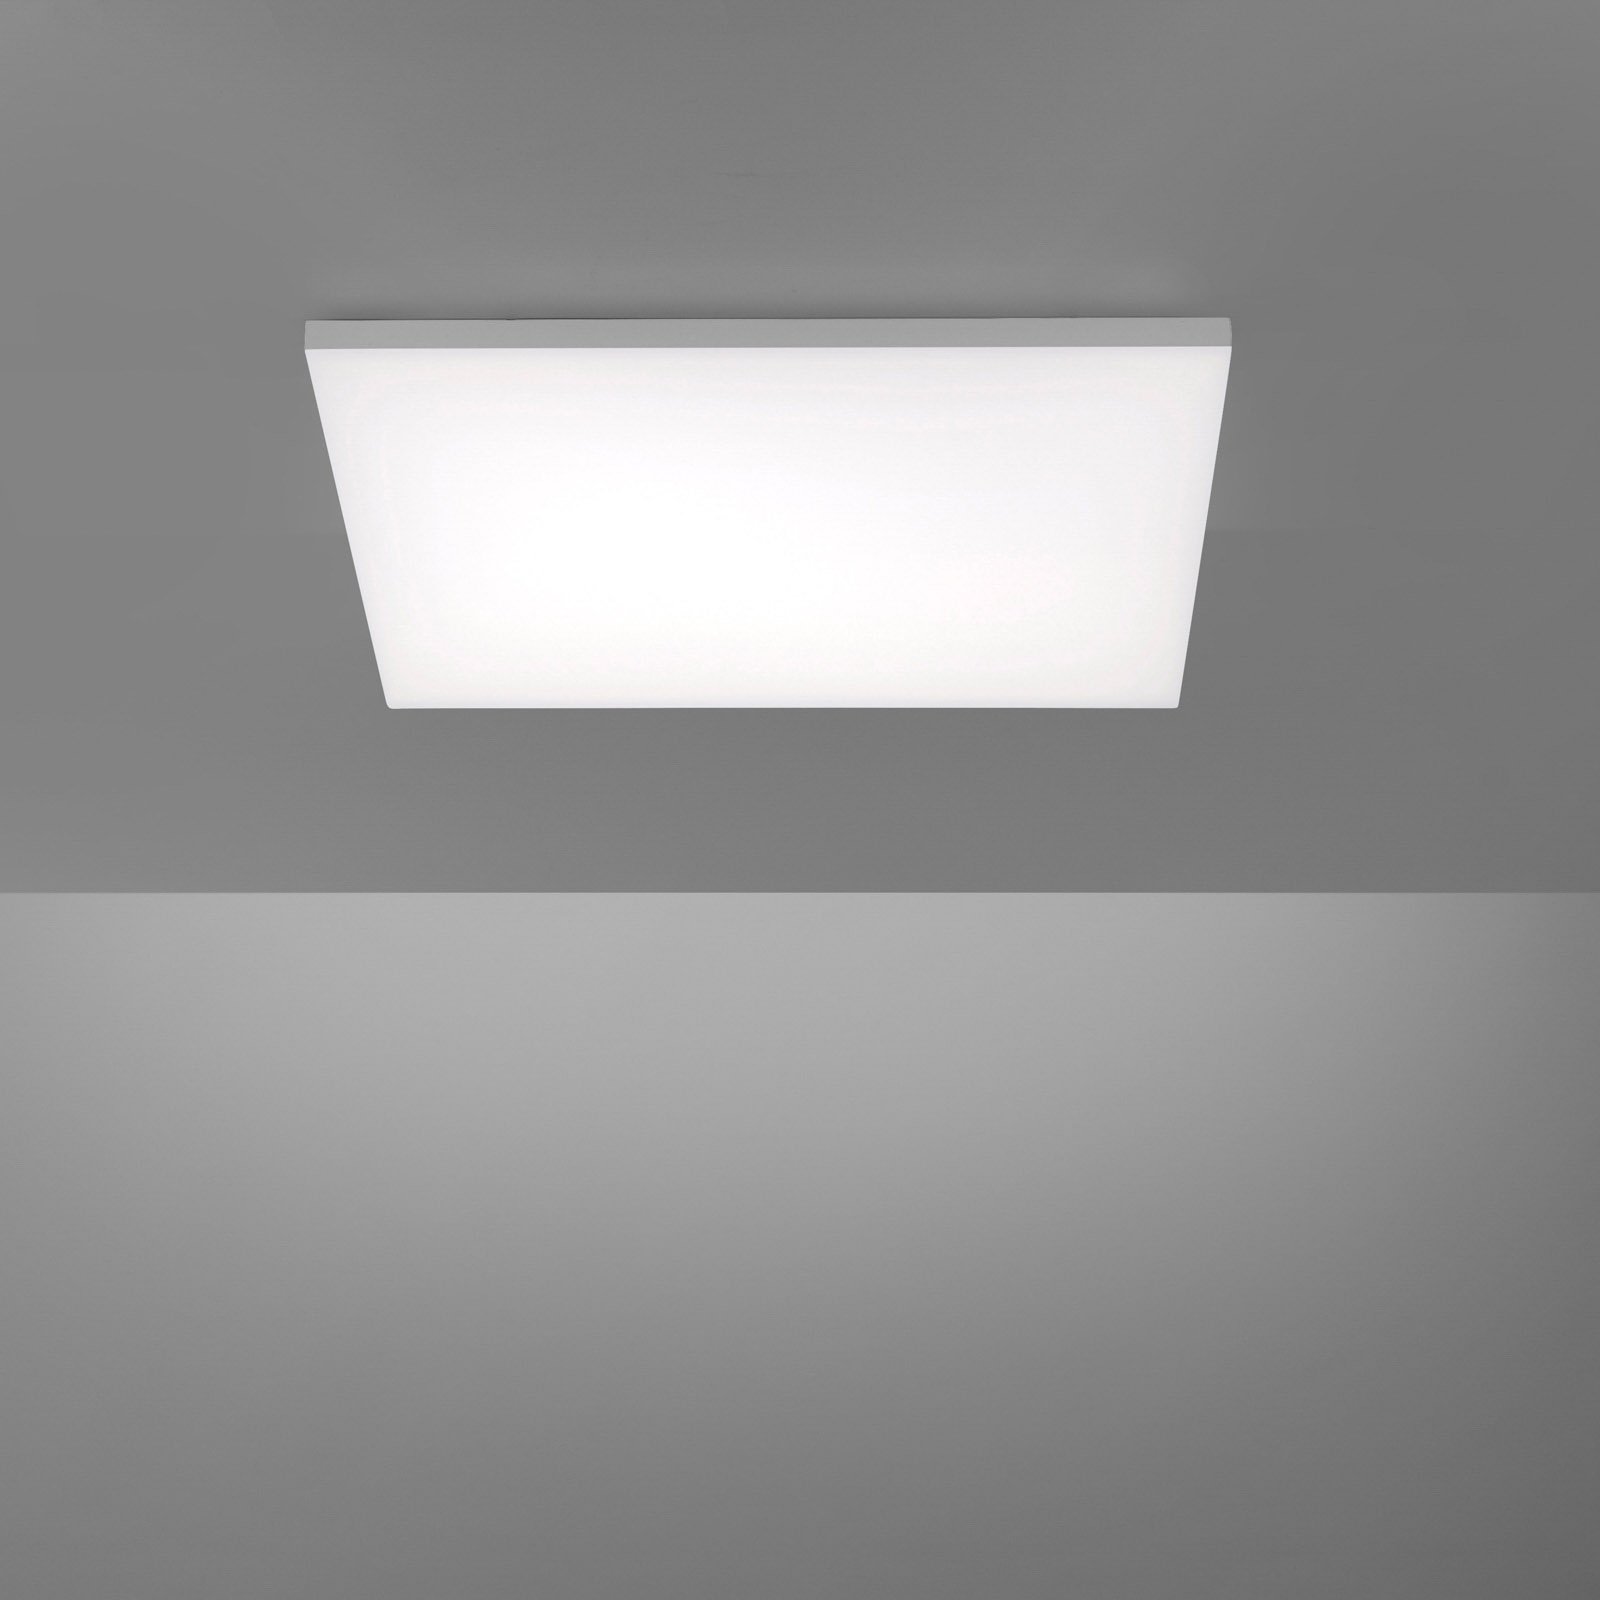 LED lubinis šviestuvas "Canvas", derinamas baltas, 60 cm